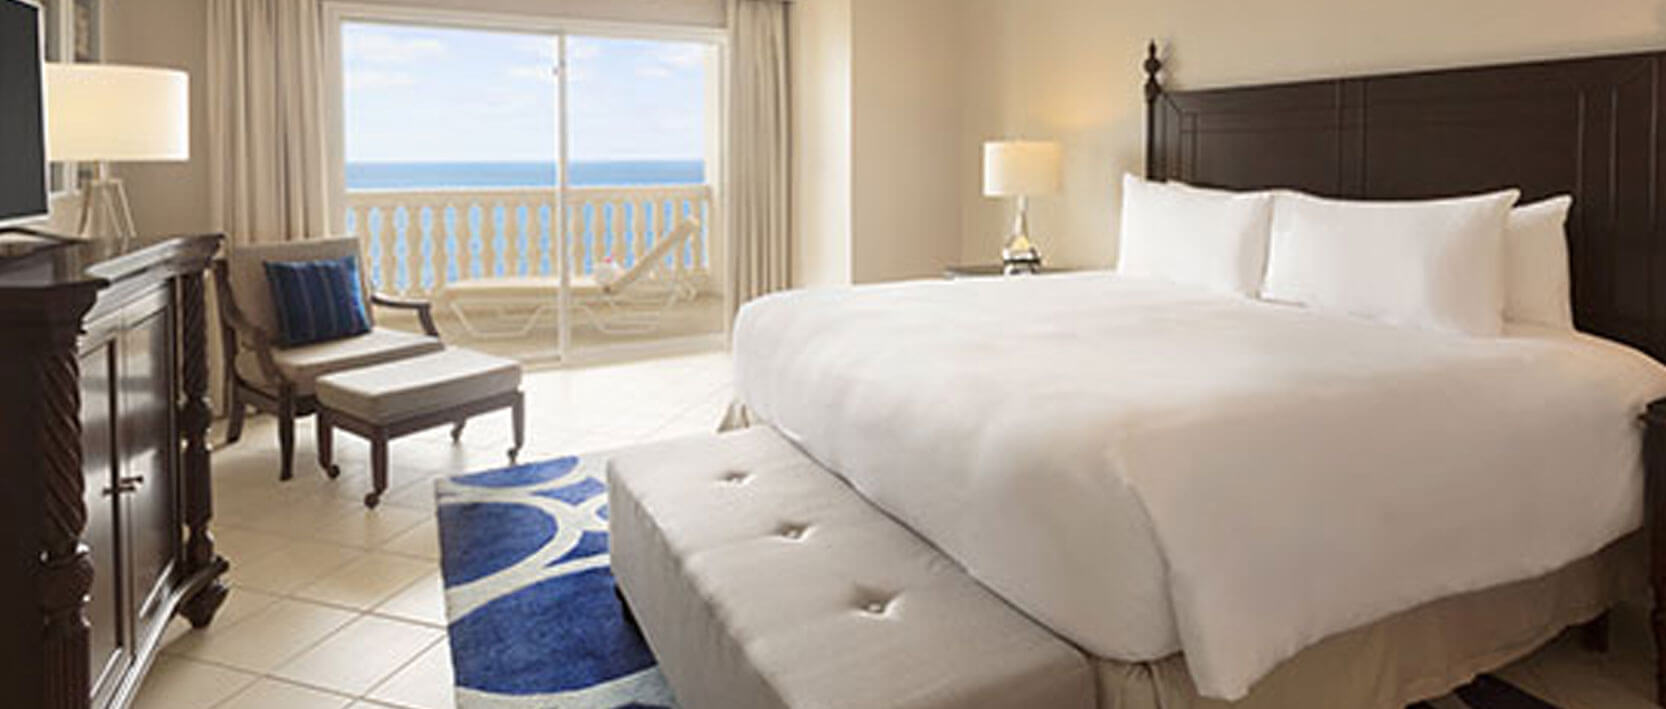 Hyatt Zilara Rose Hall Accommodations - One-Bedroom Ocean View Butler Suite